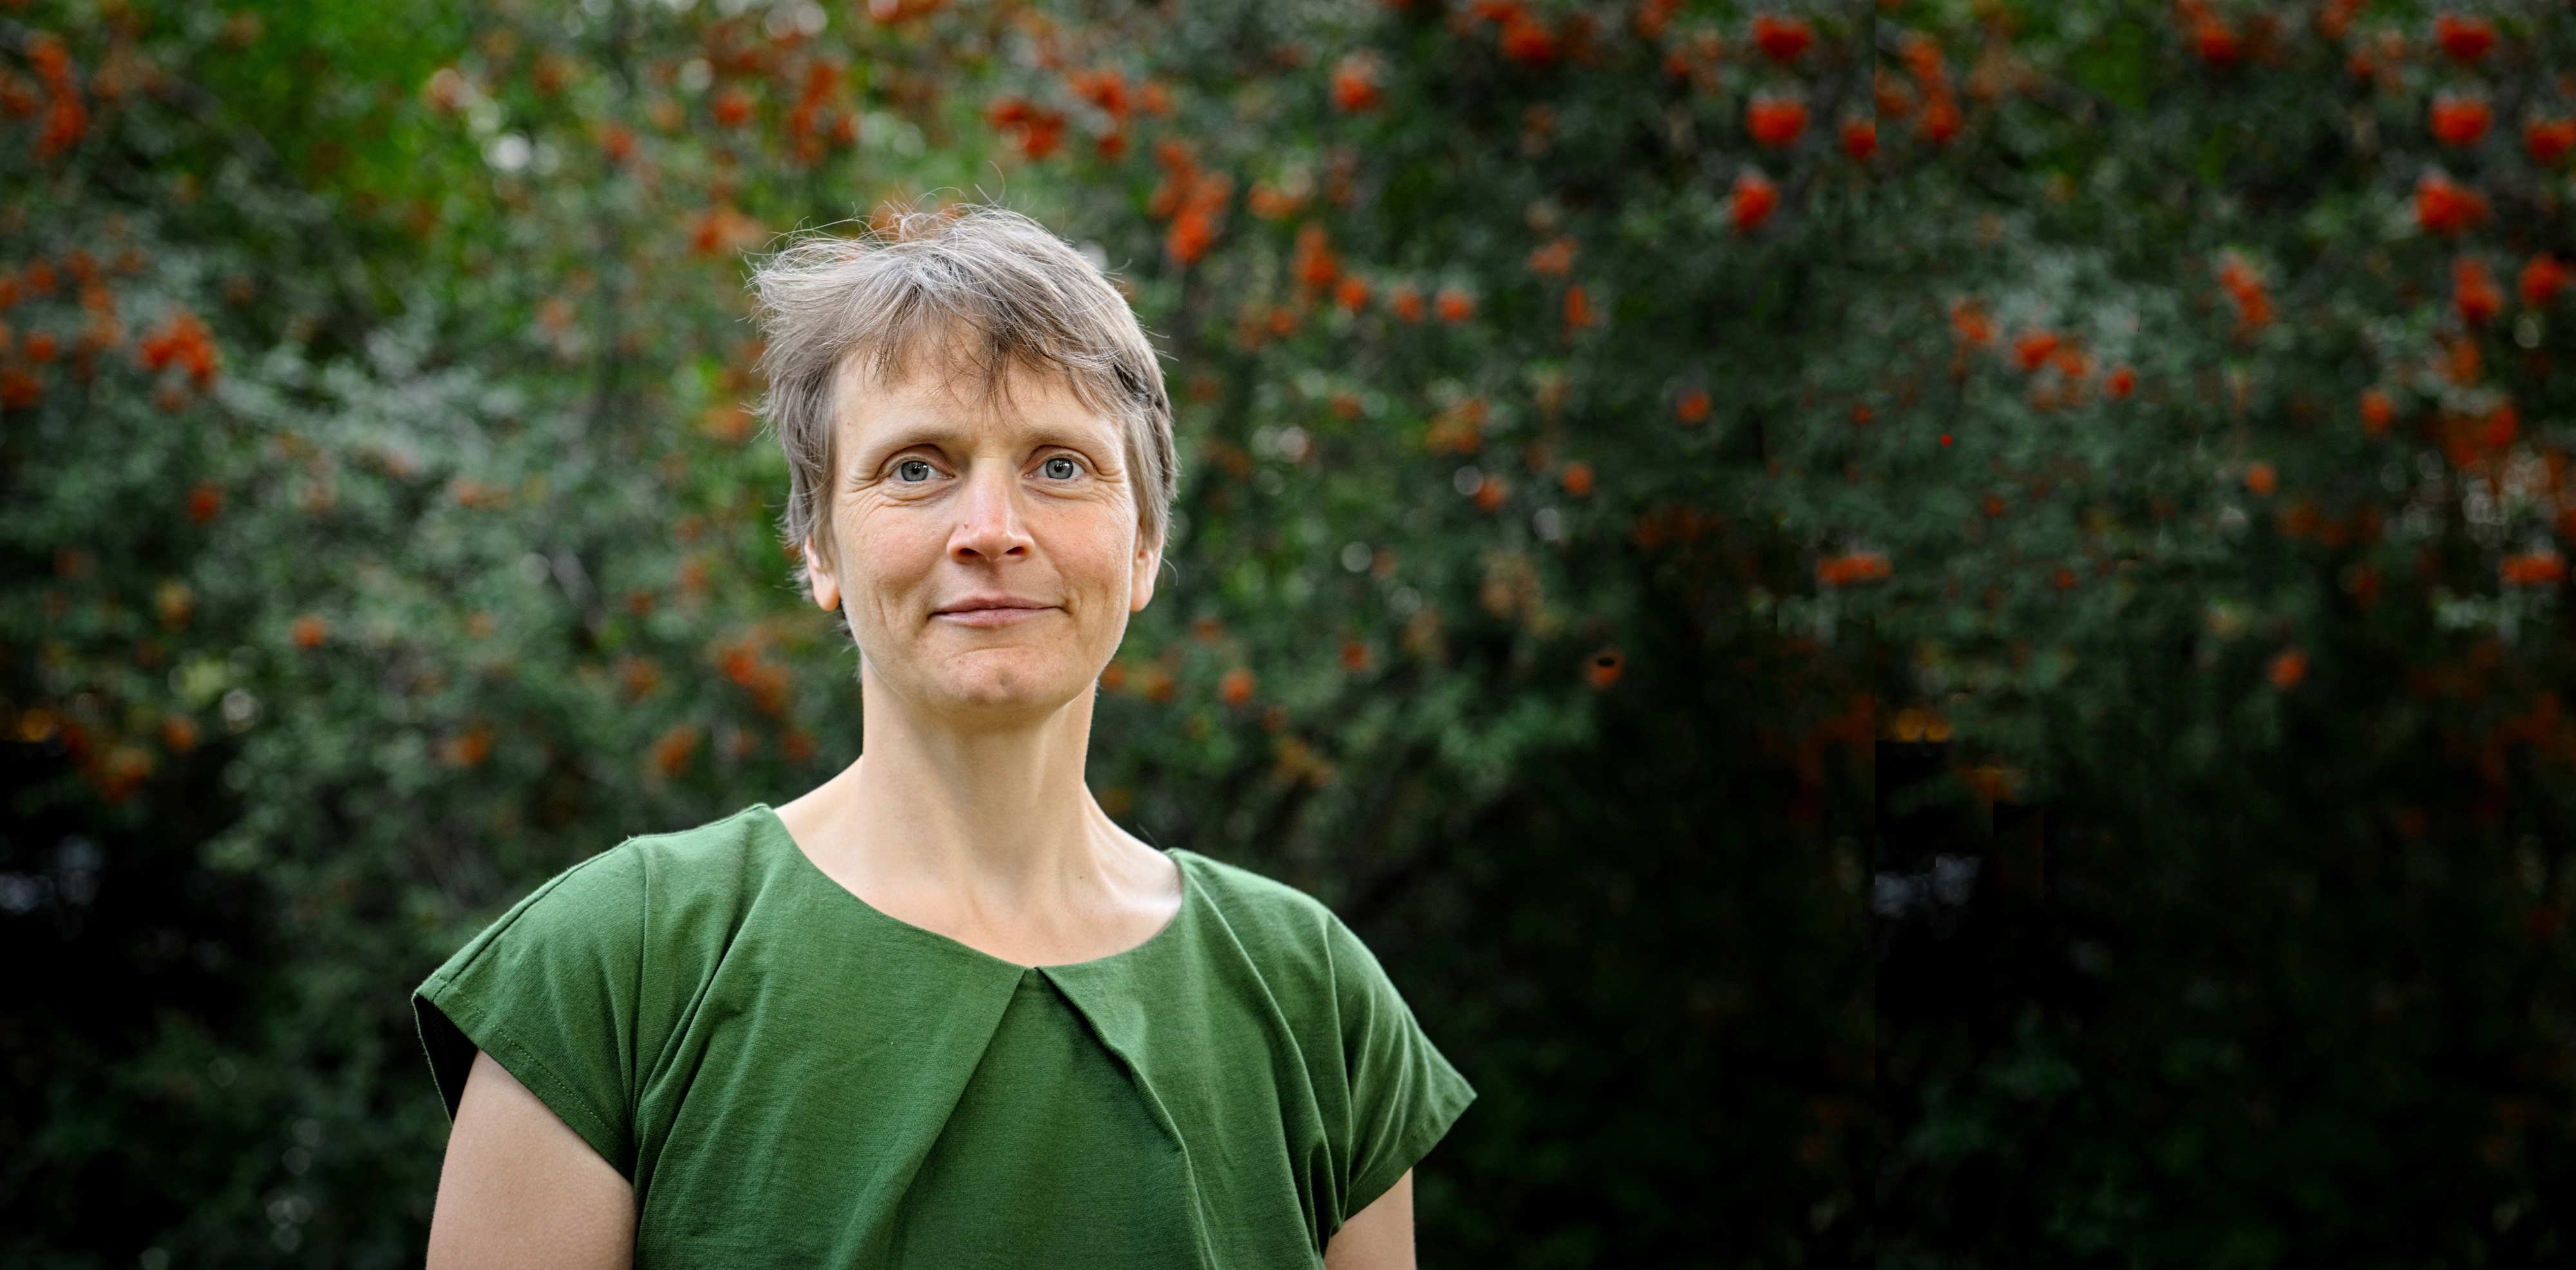 Frau vor Hintergrund mit Bäumen zeigt Prof. Alena Bleicher